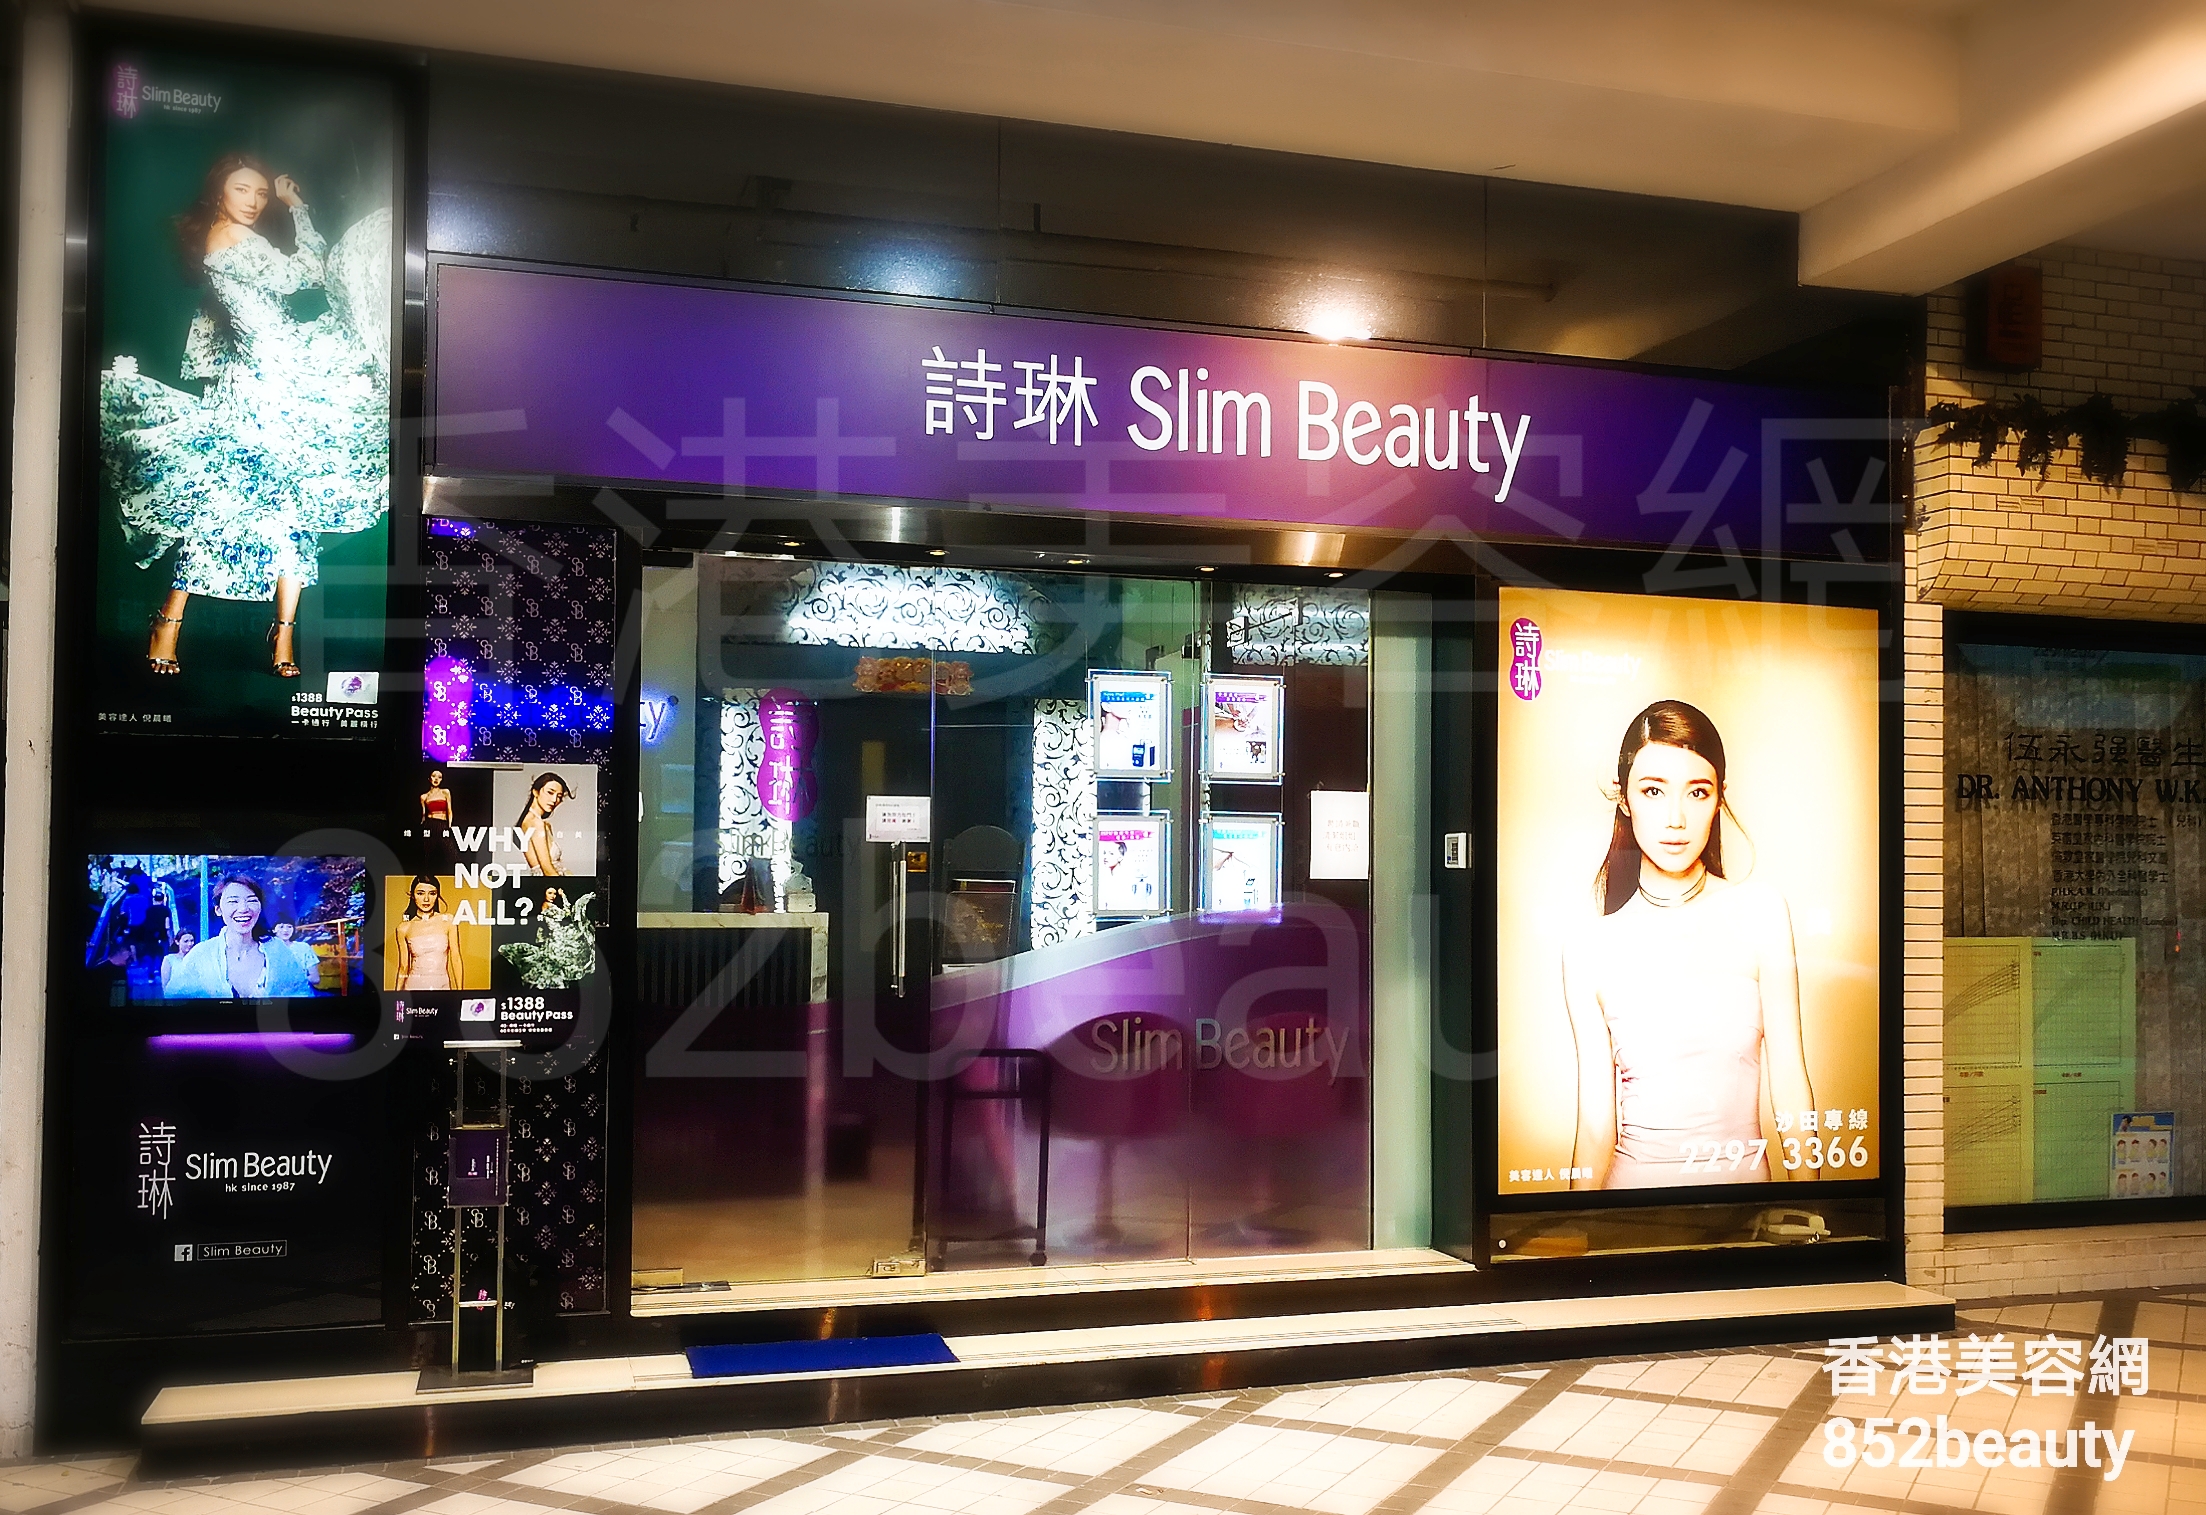 香港美容網 Hong Kong Beauty Salon 美容院 / 美容師: 詩琳美容 Slim Beauty (沙田分店)